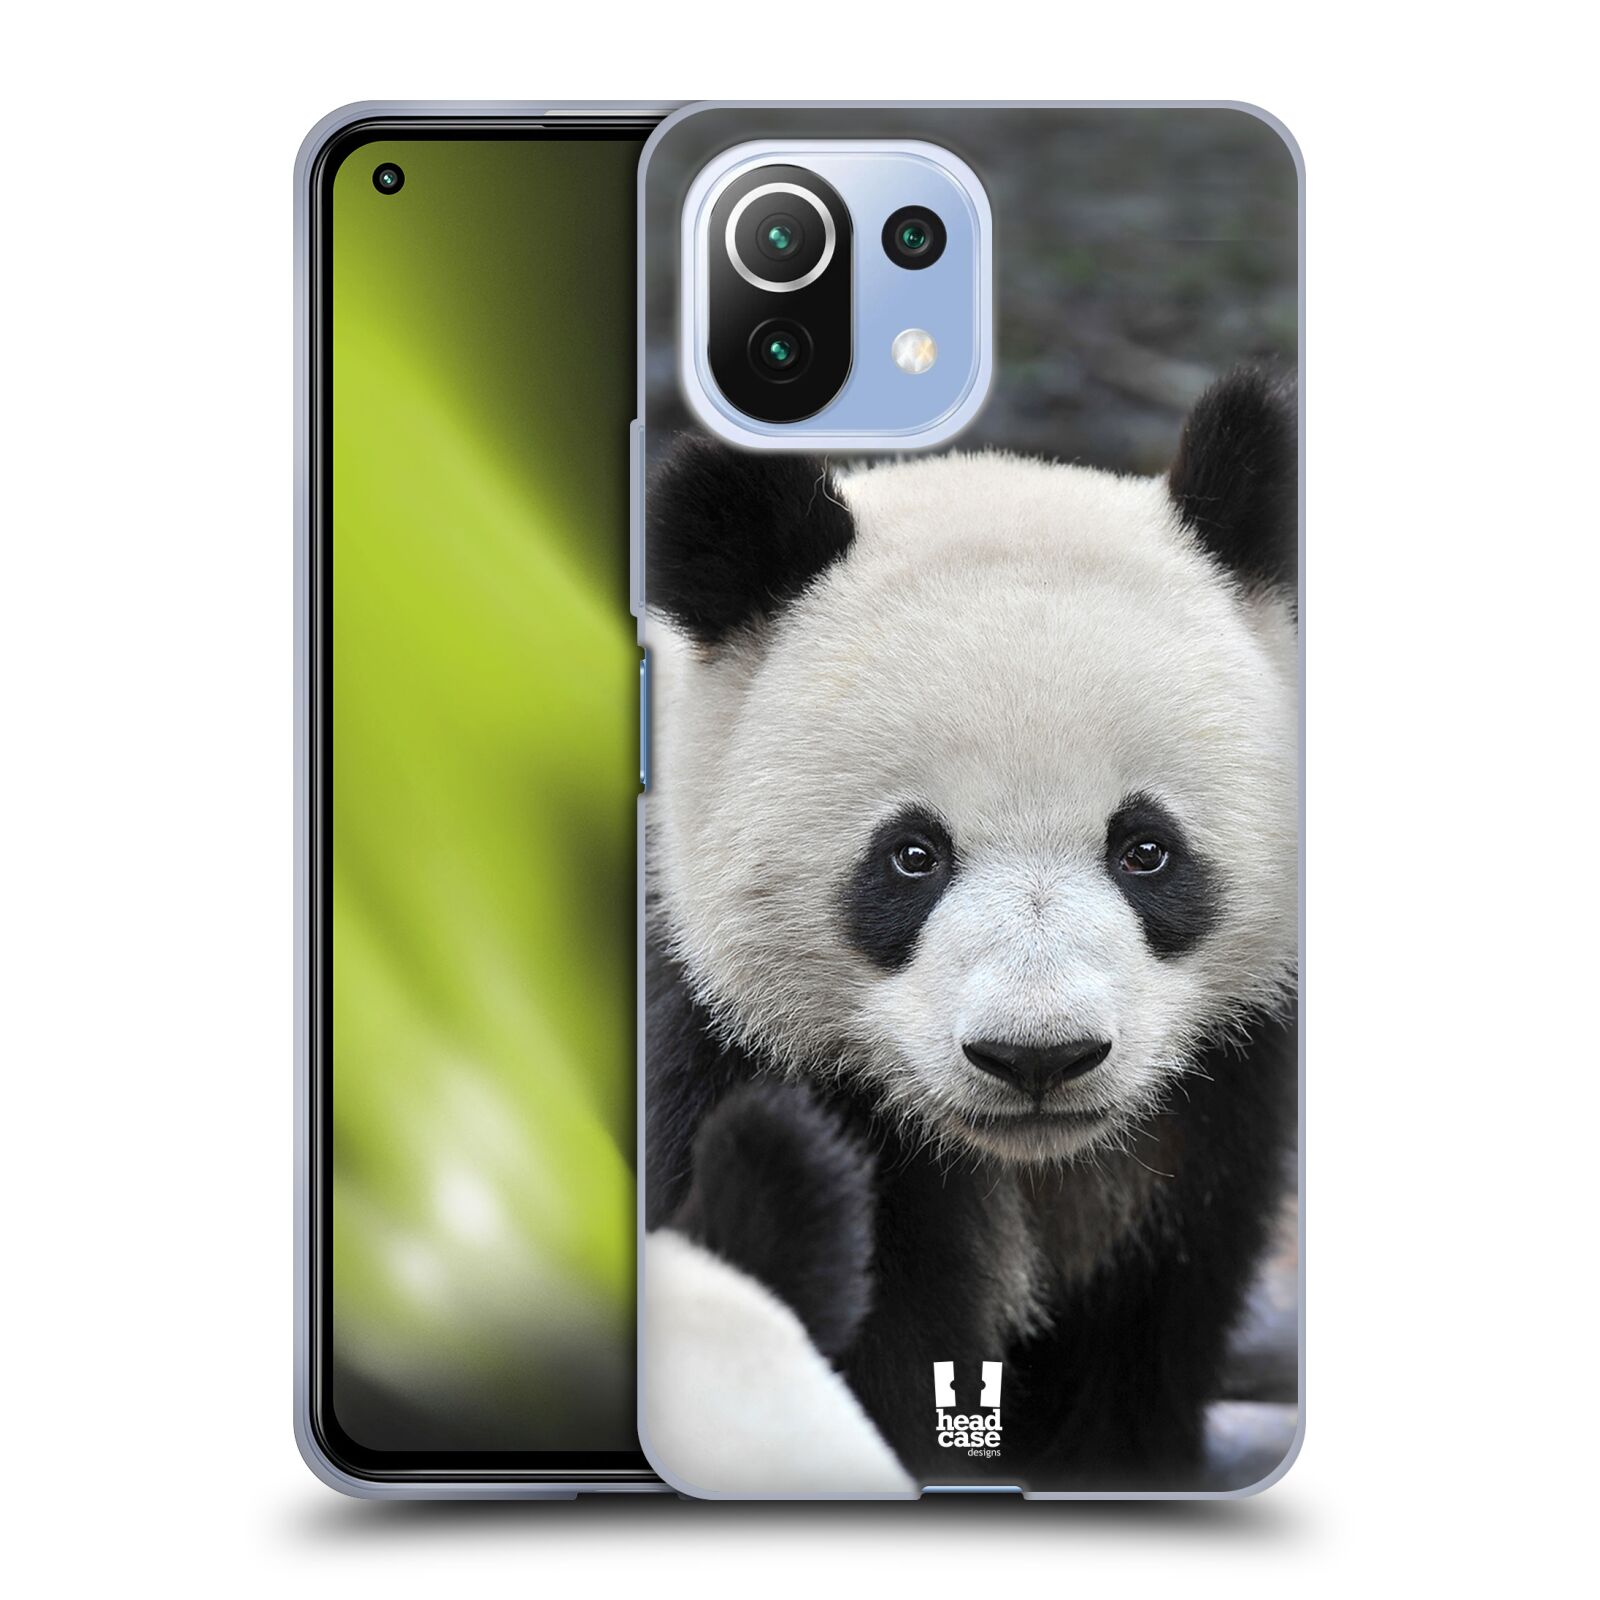 Plastový obal HEAD CASE na mobil Xiaomi Mi 11 LITE vzor Divočina, Divoký život a zvířata foto MEDVĚD PANDA